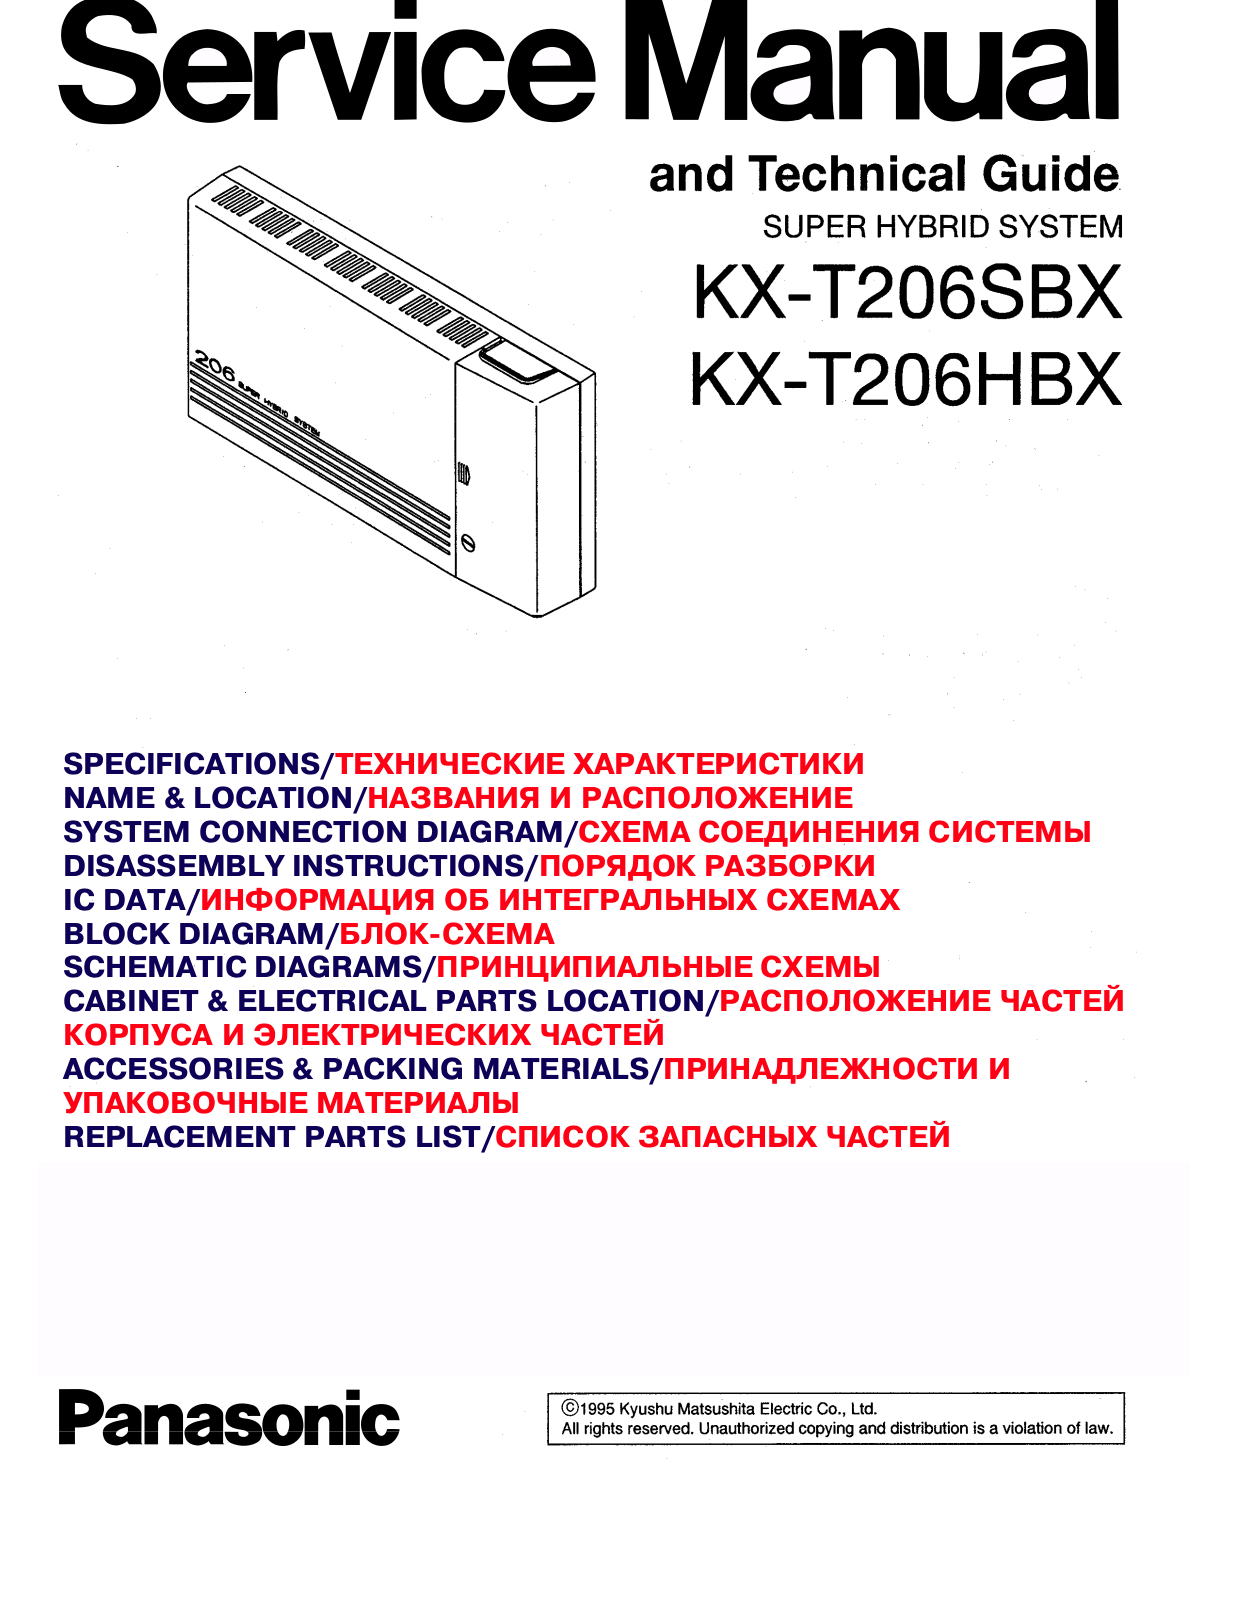 Panasonic KX-T206SBX, KX-T206HBX Service Manual